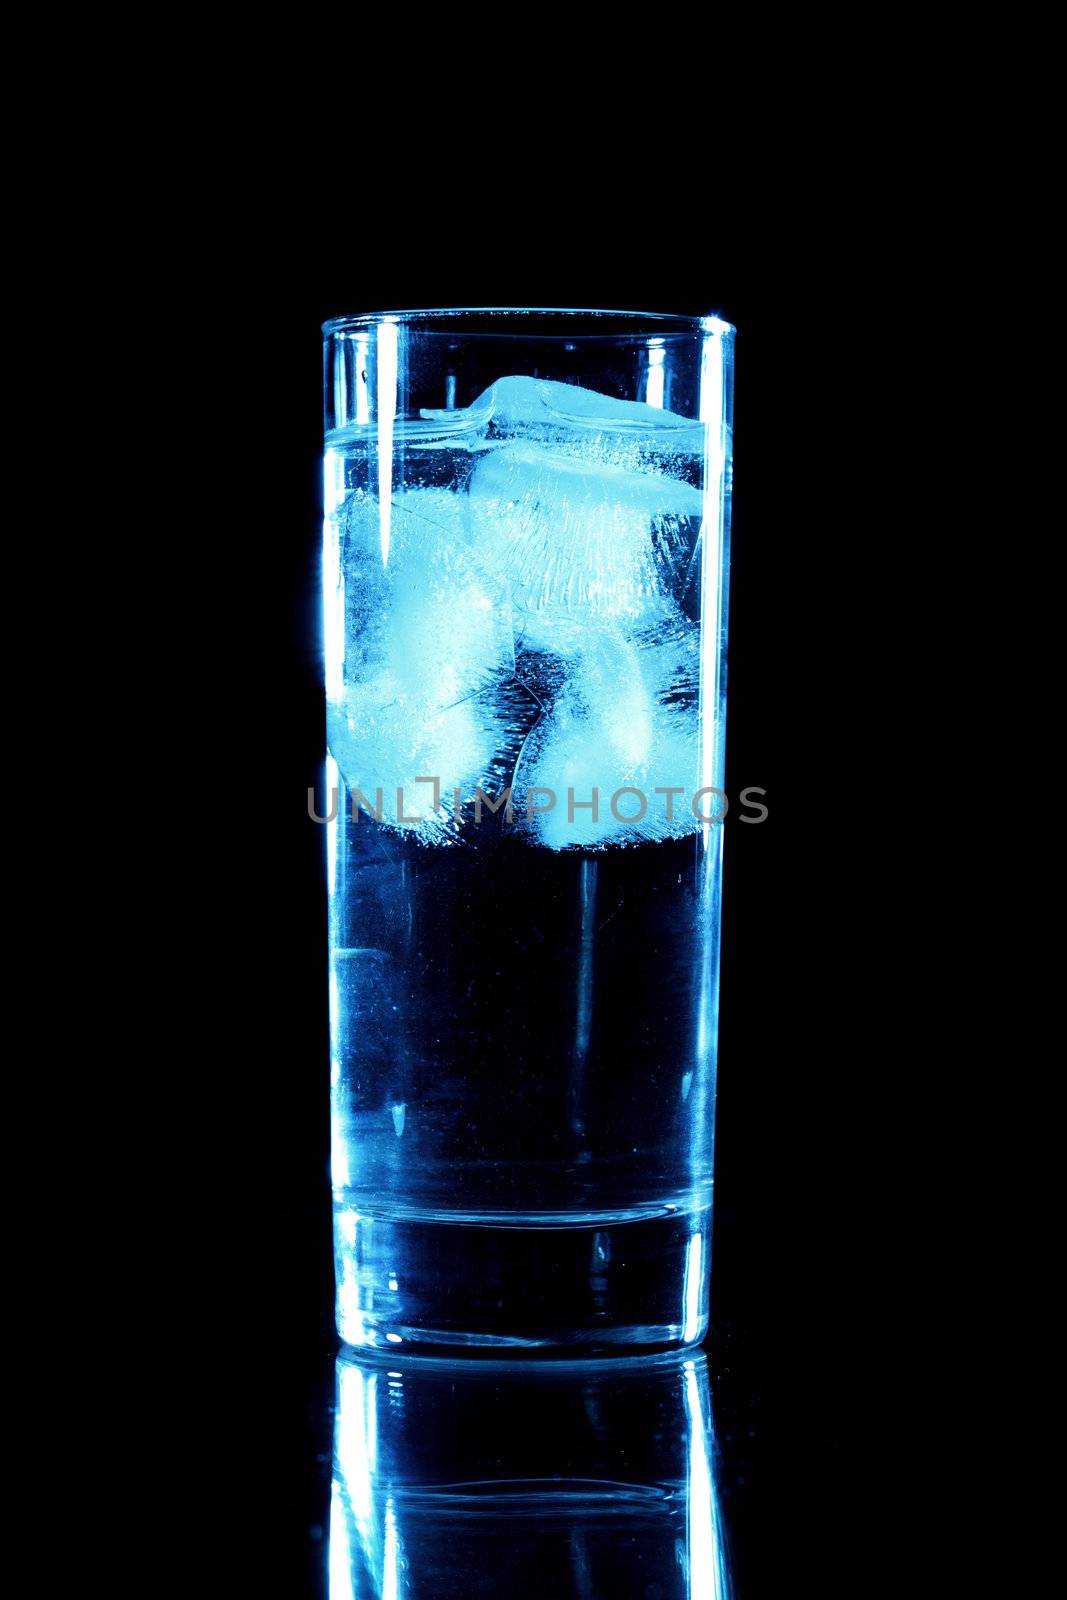 blue drink on black background